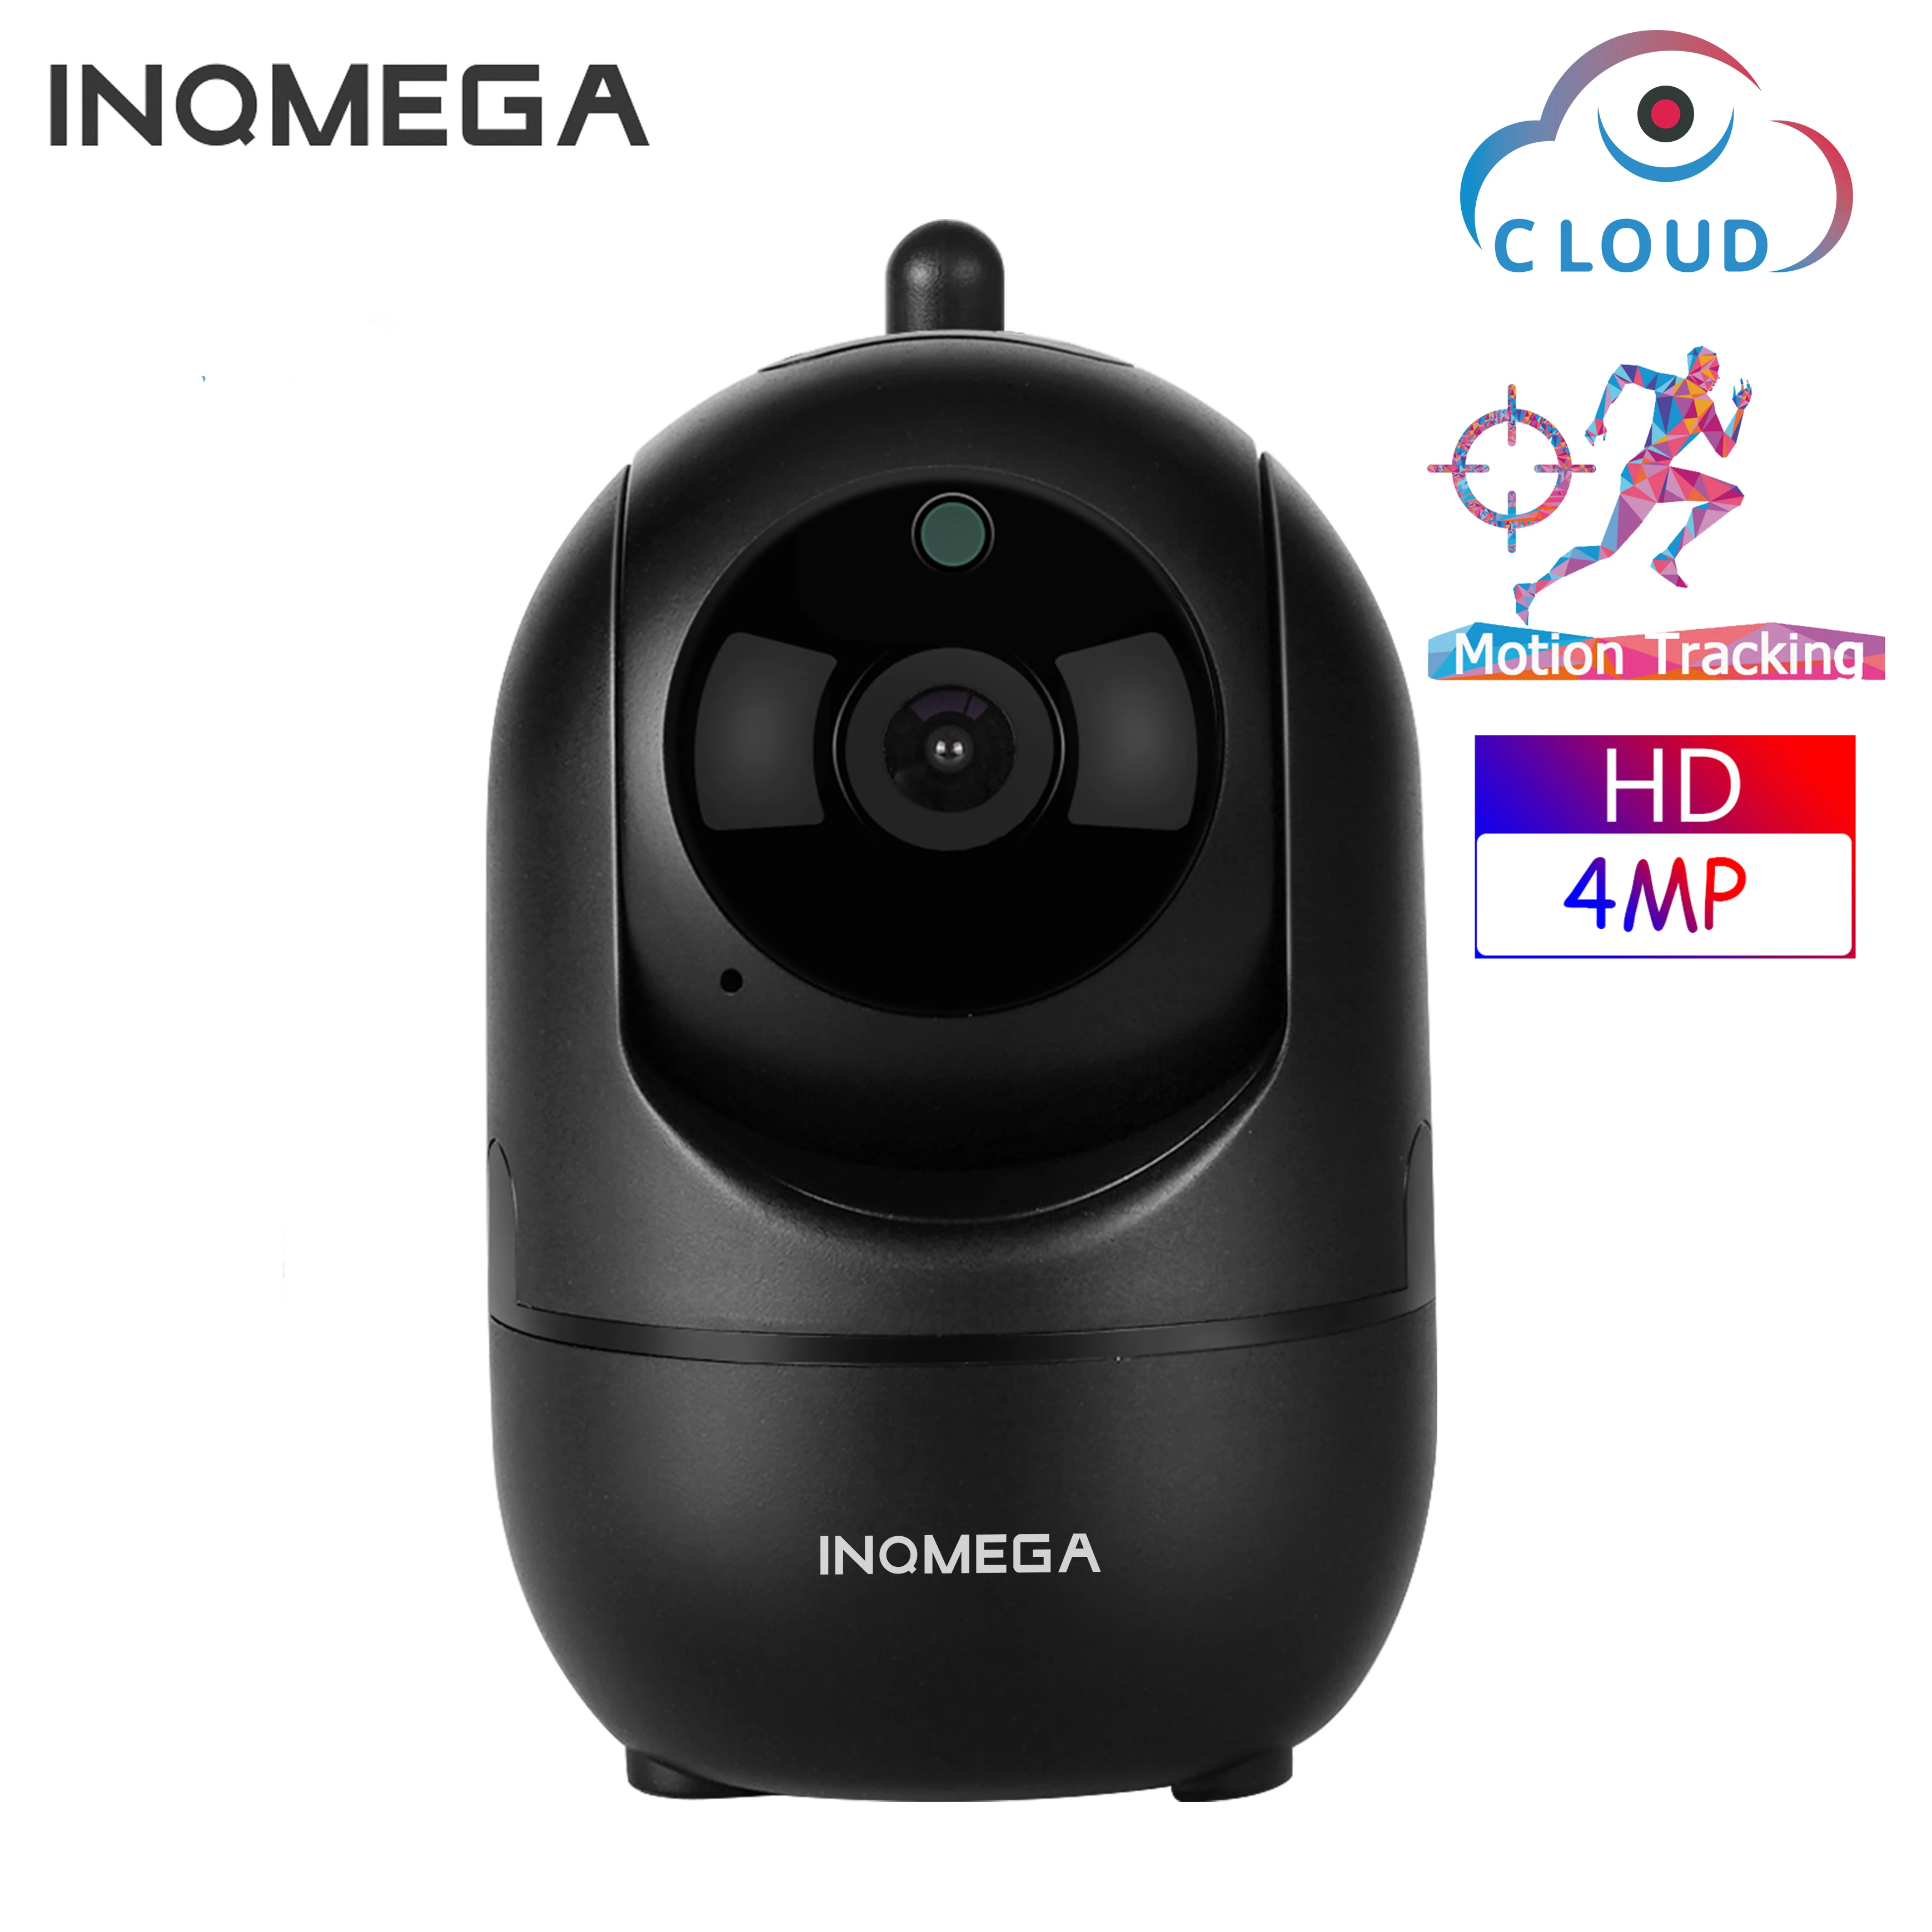 Фото IP-камера INQMEGA HD 4 МП облачная беспроводная интеллектуальное автоматическое